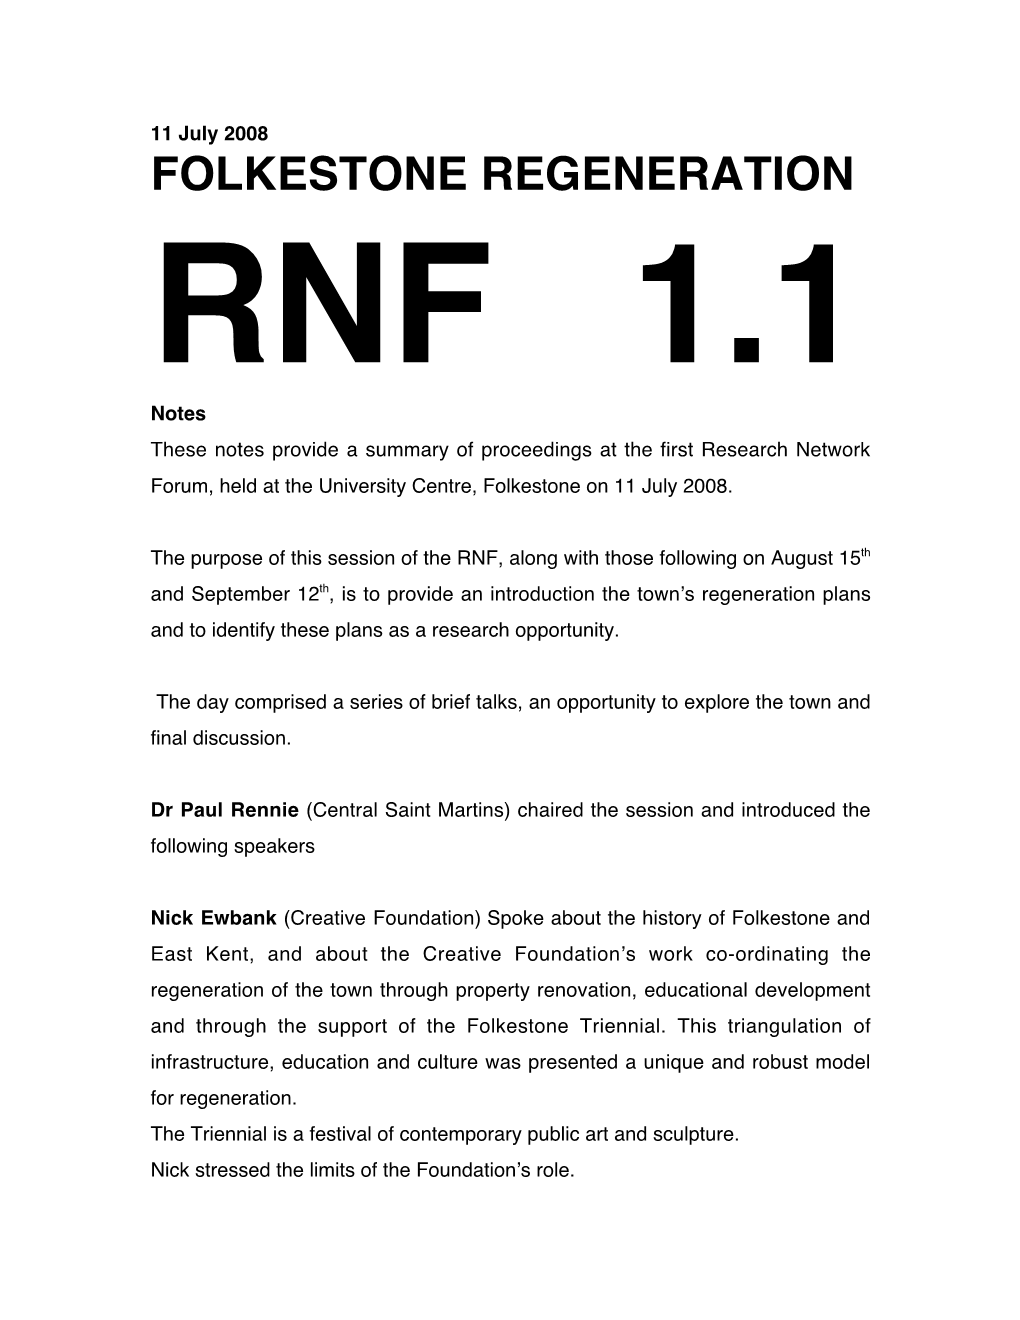 Folkestone Regeneration